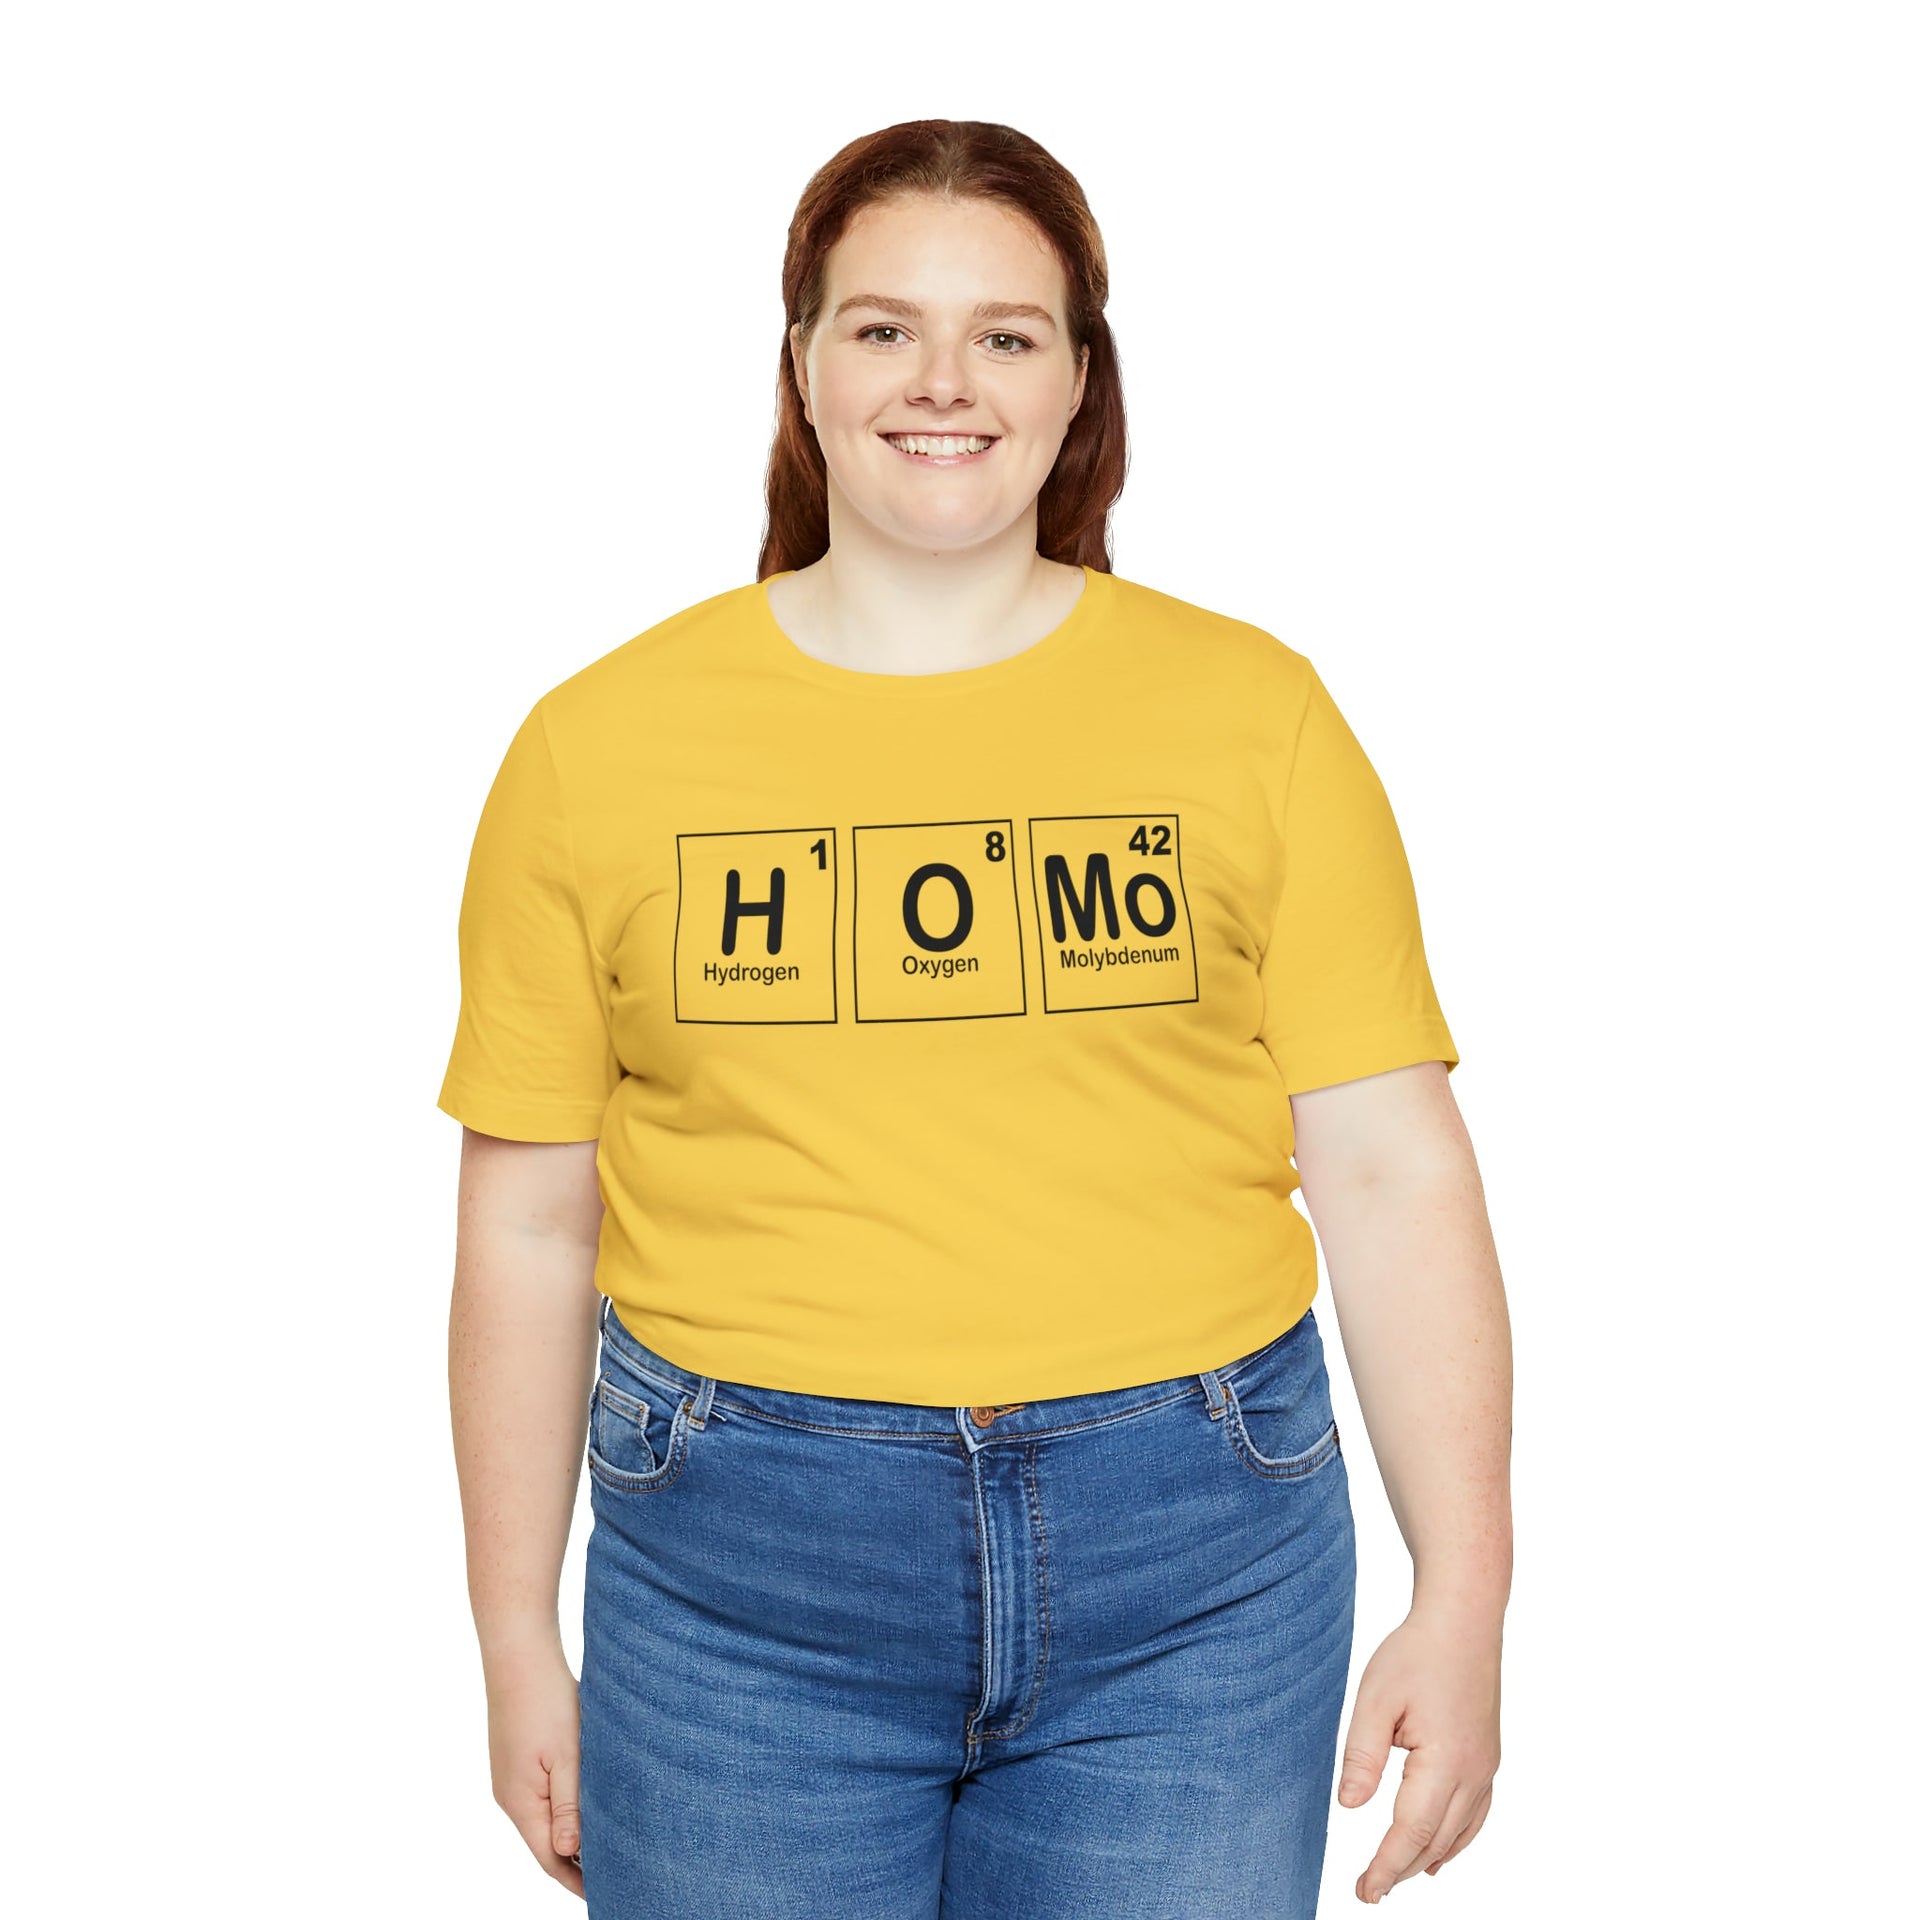 HOMO Tee T-Shirt by Printify | Akron Pride Custom Tees